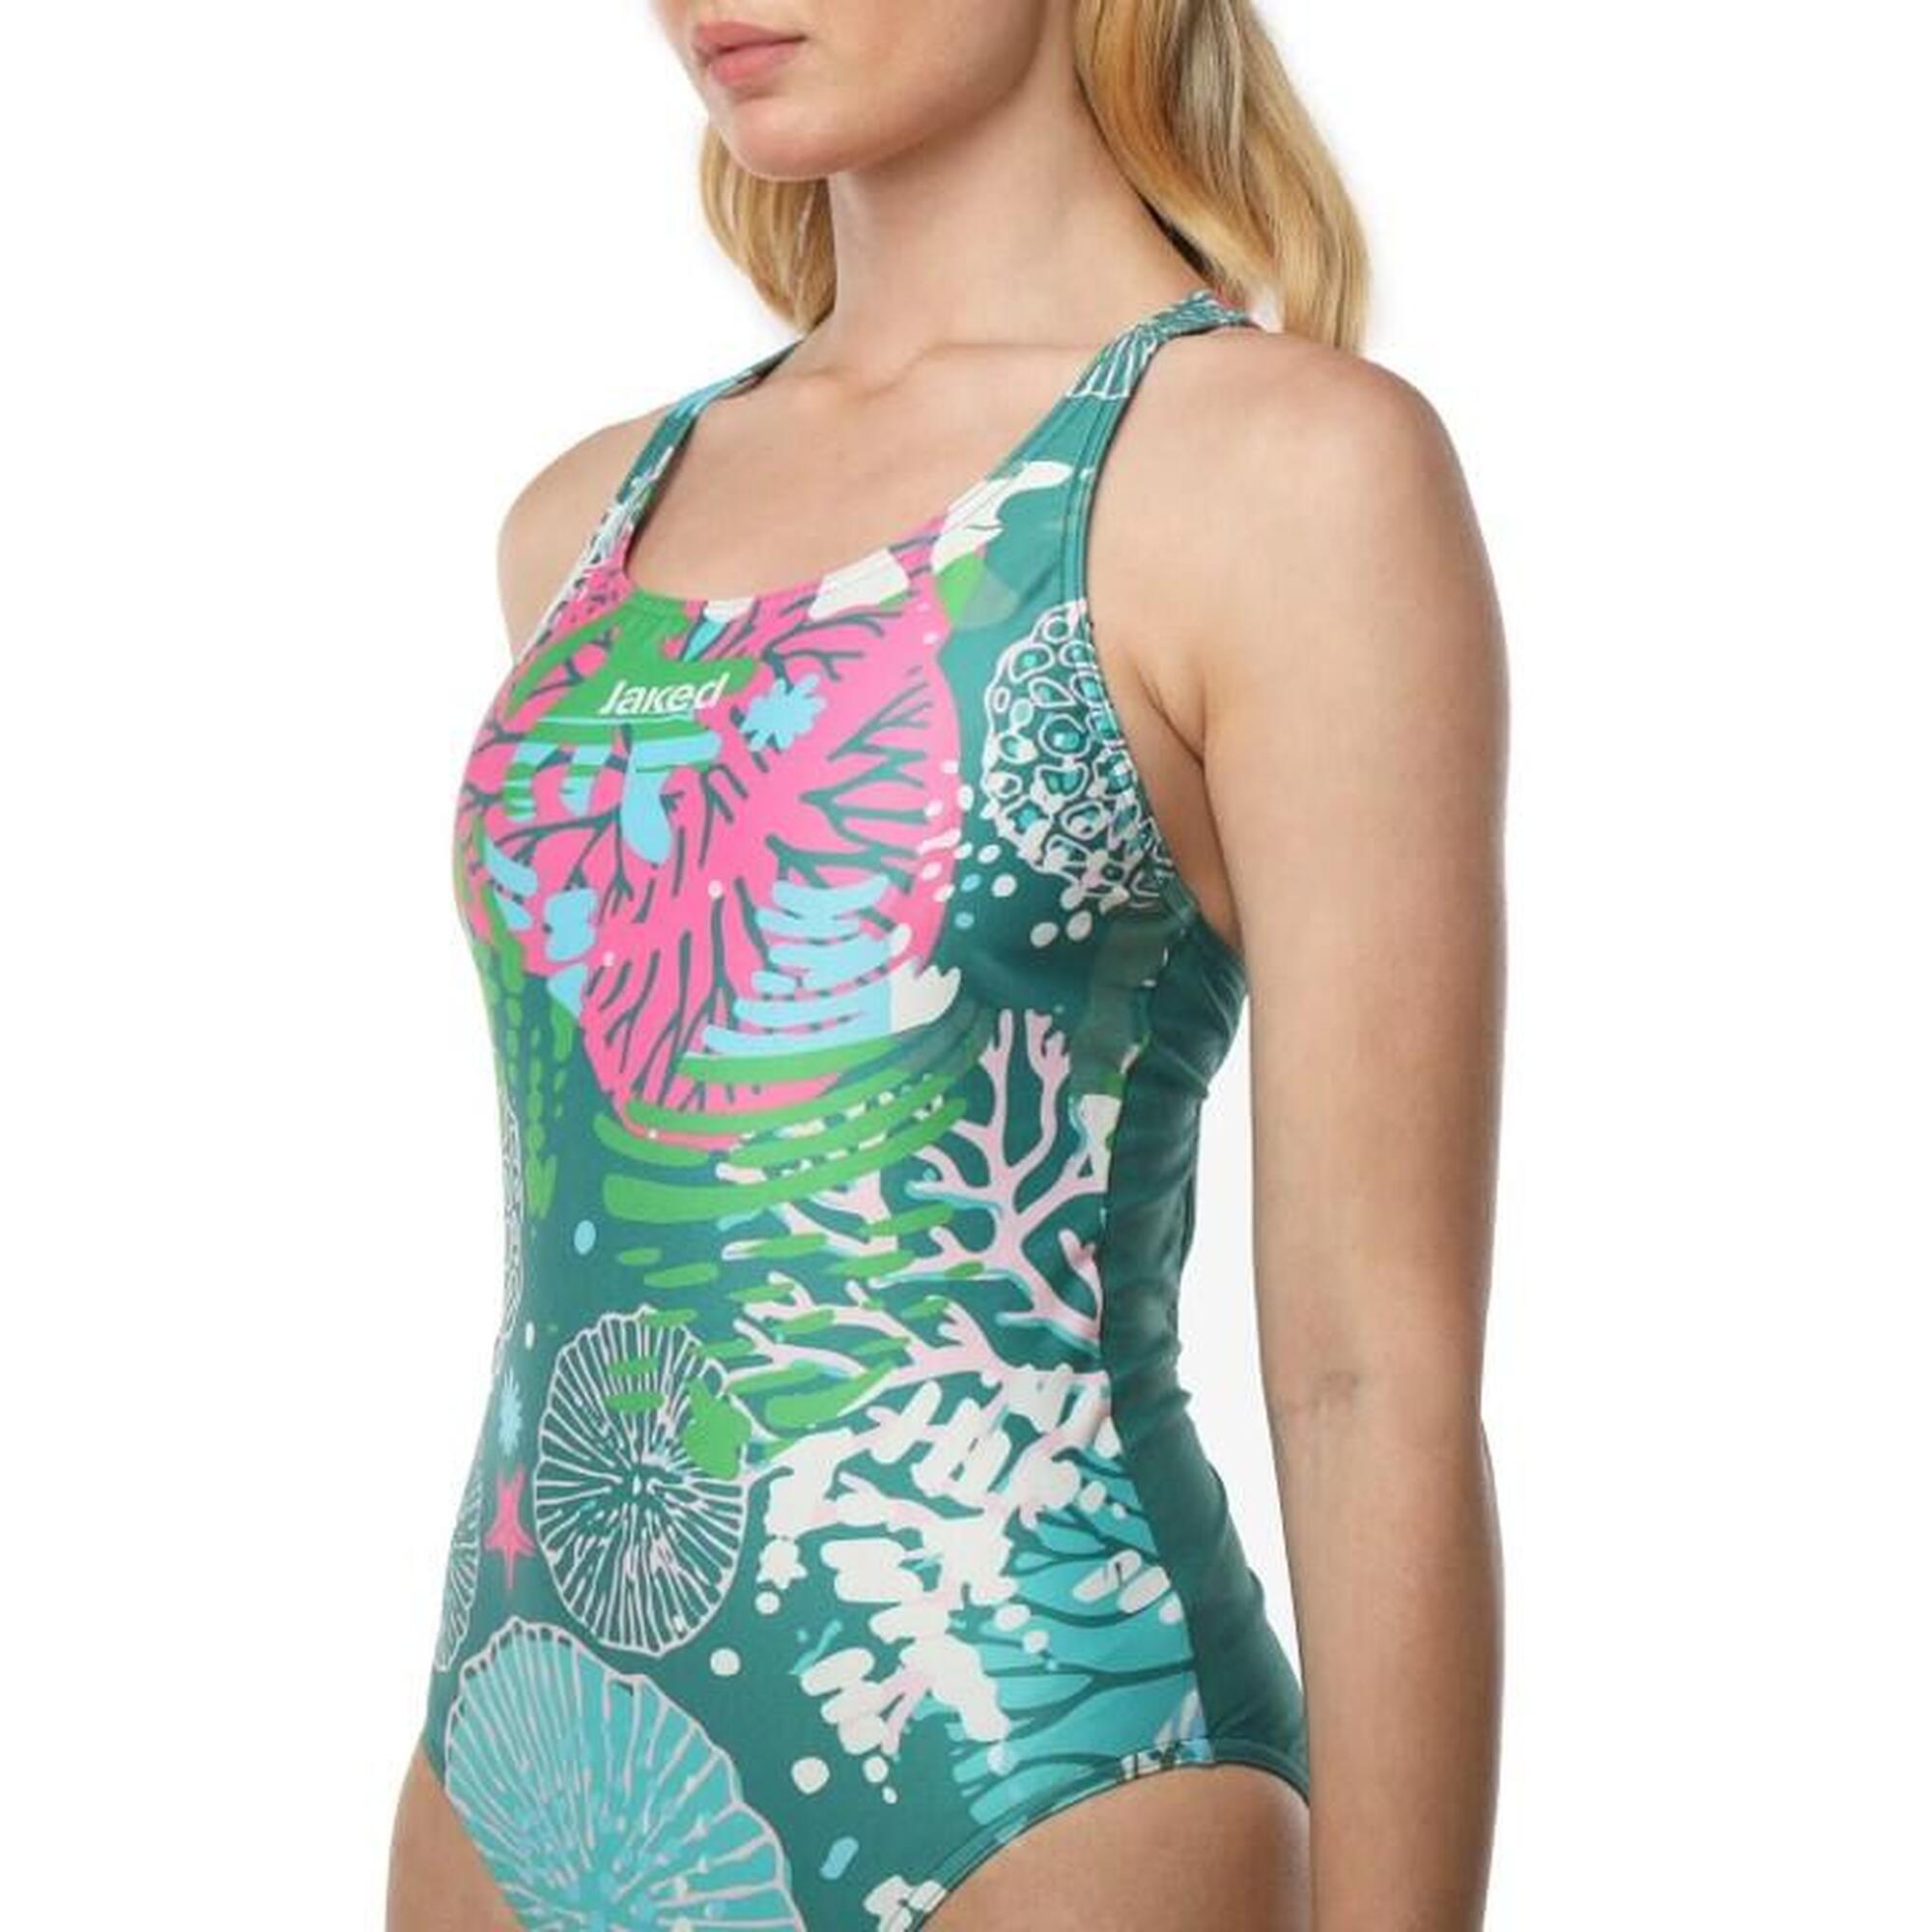 SAVE THE OCEAN 女士連身泳衣 - 綠色